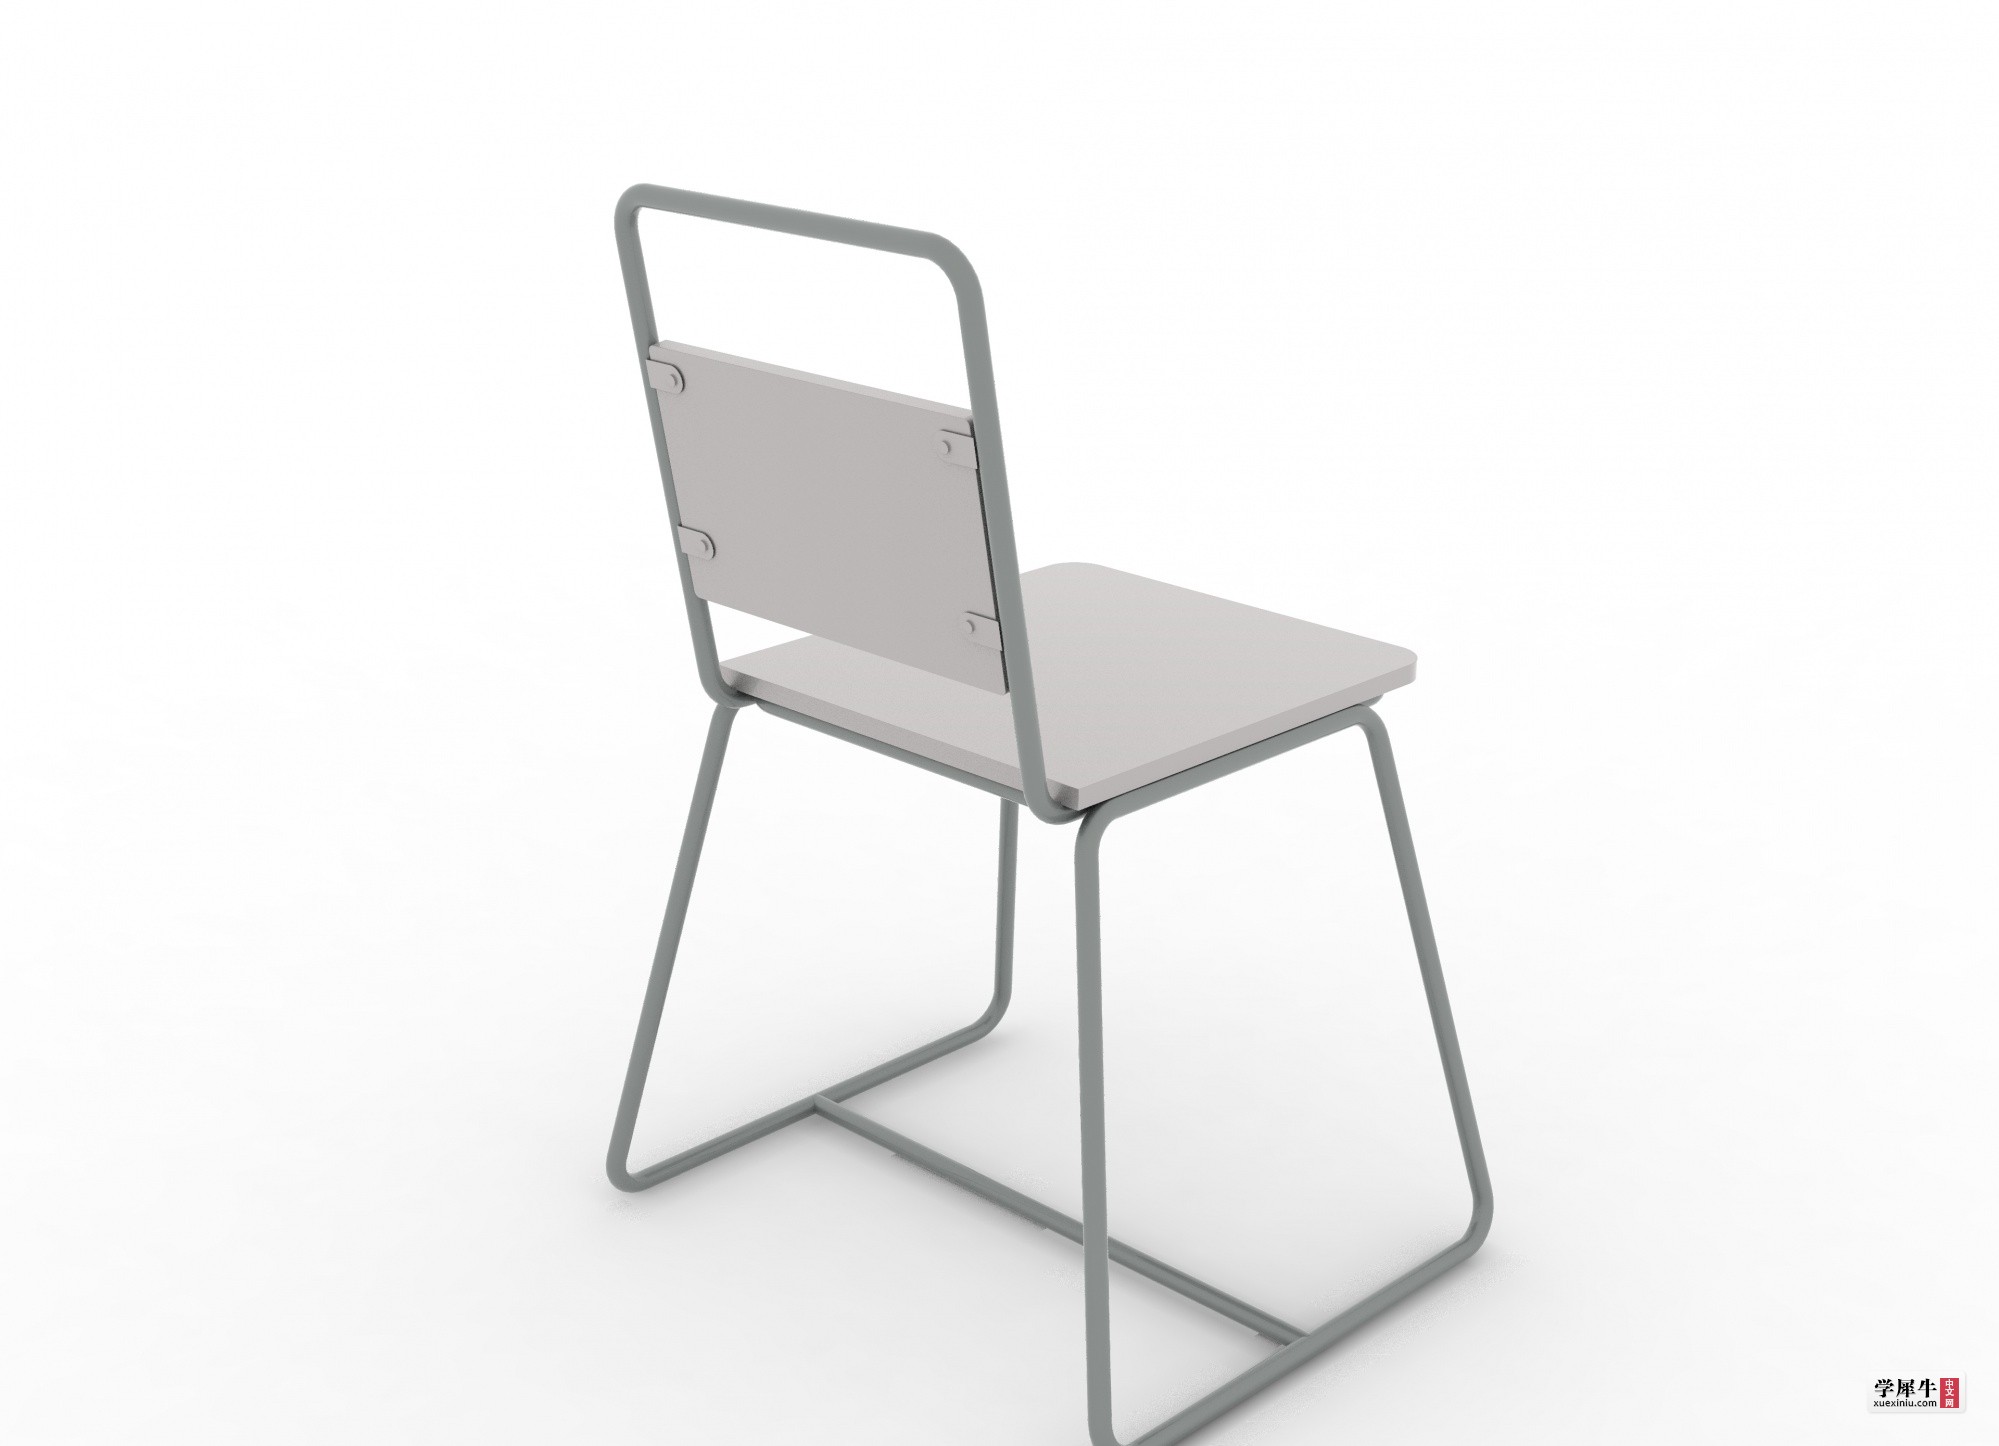 座椅效果图1.jpg